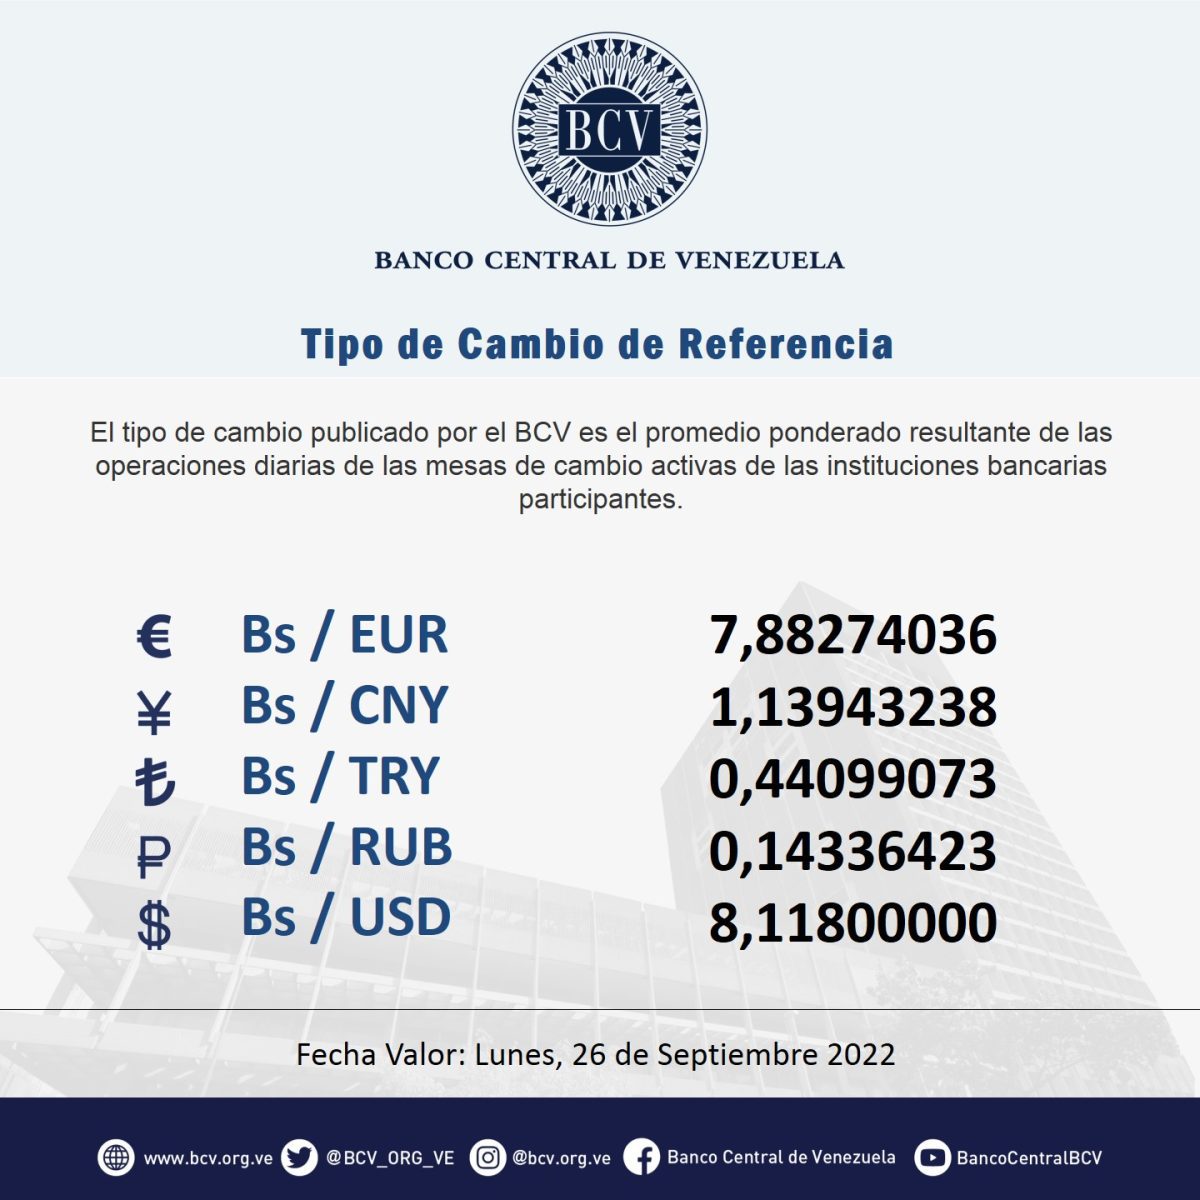 dolartoday en venezuela precio del dolar sabado 24 de septiembre de 2022 laverdaddemonagas.com bcv2